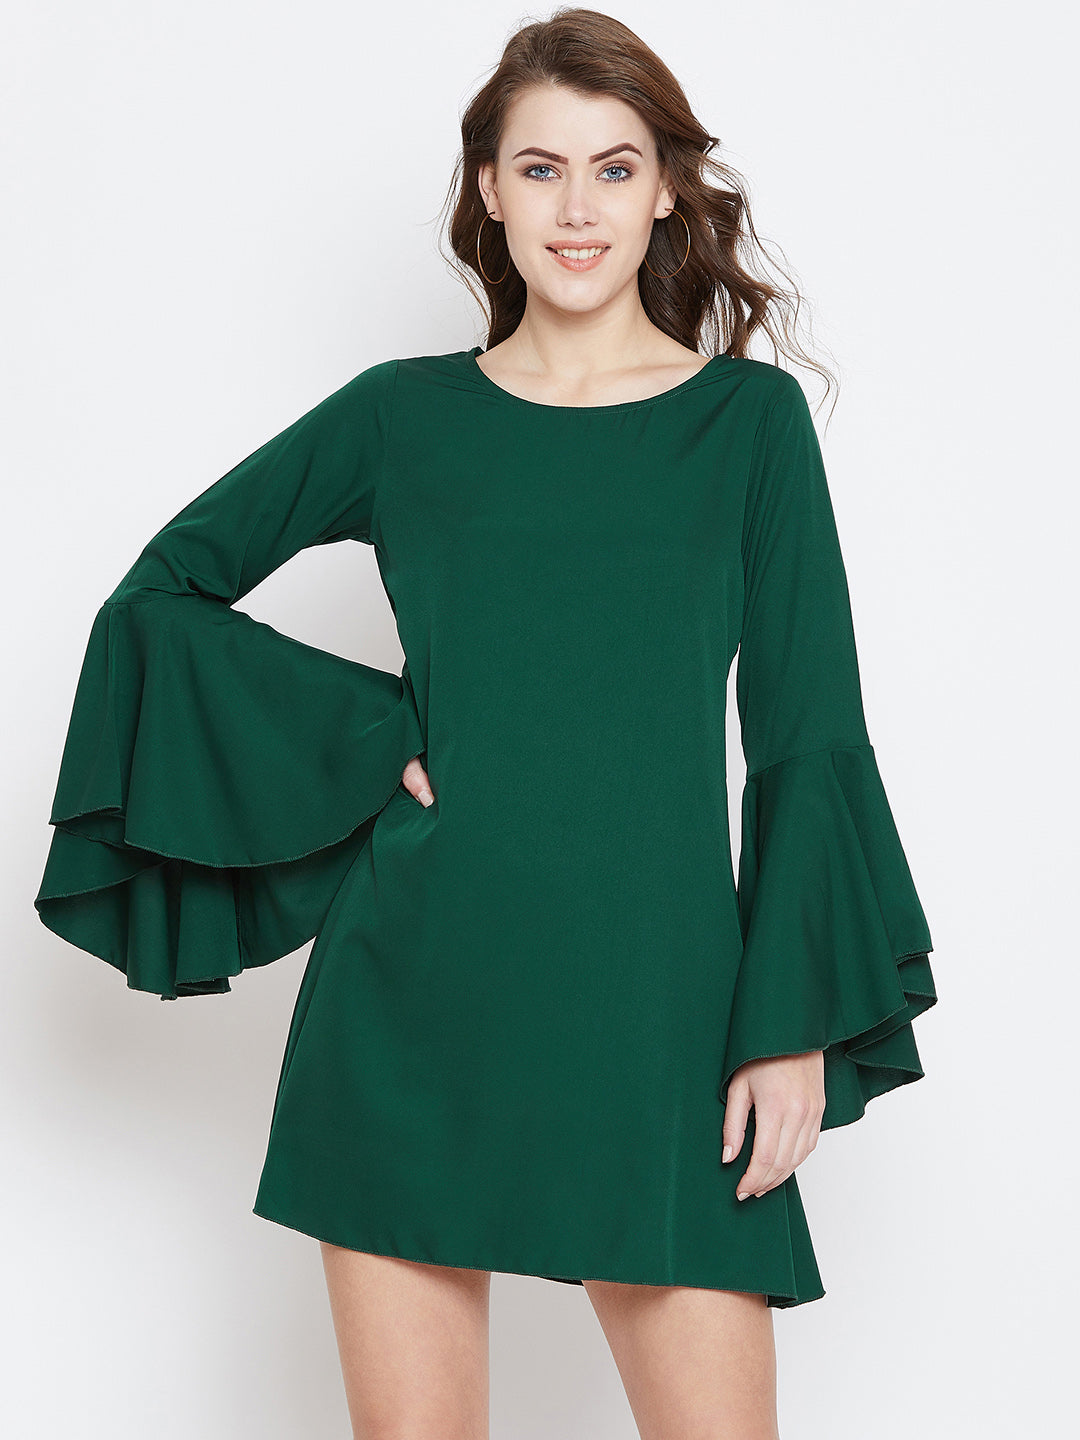 Green Solid A-Line Dress - Berrylush